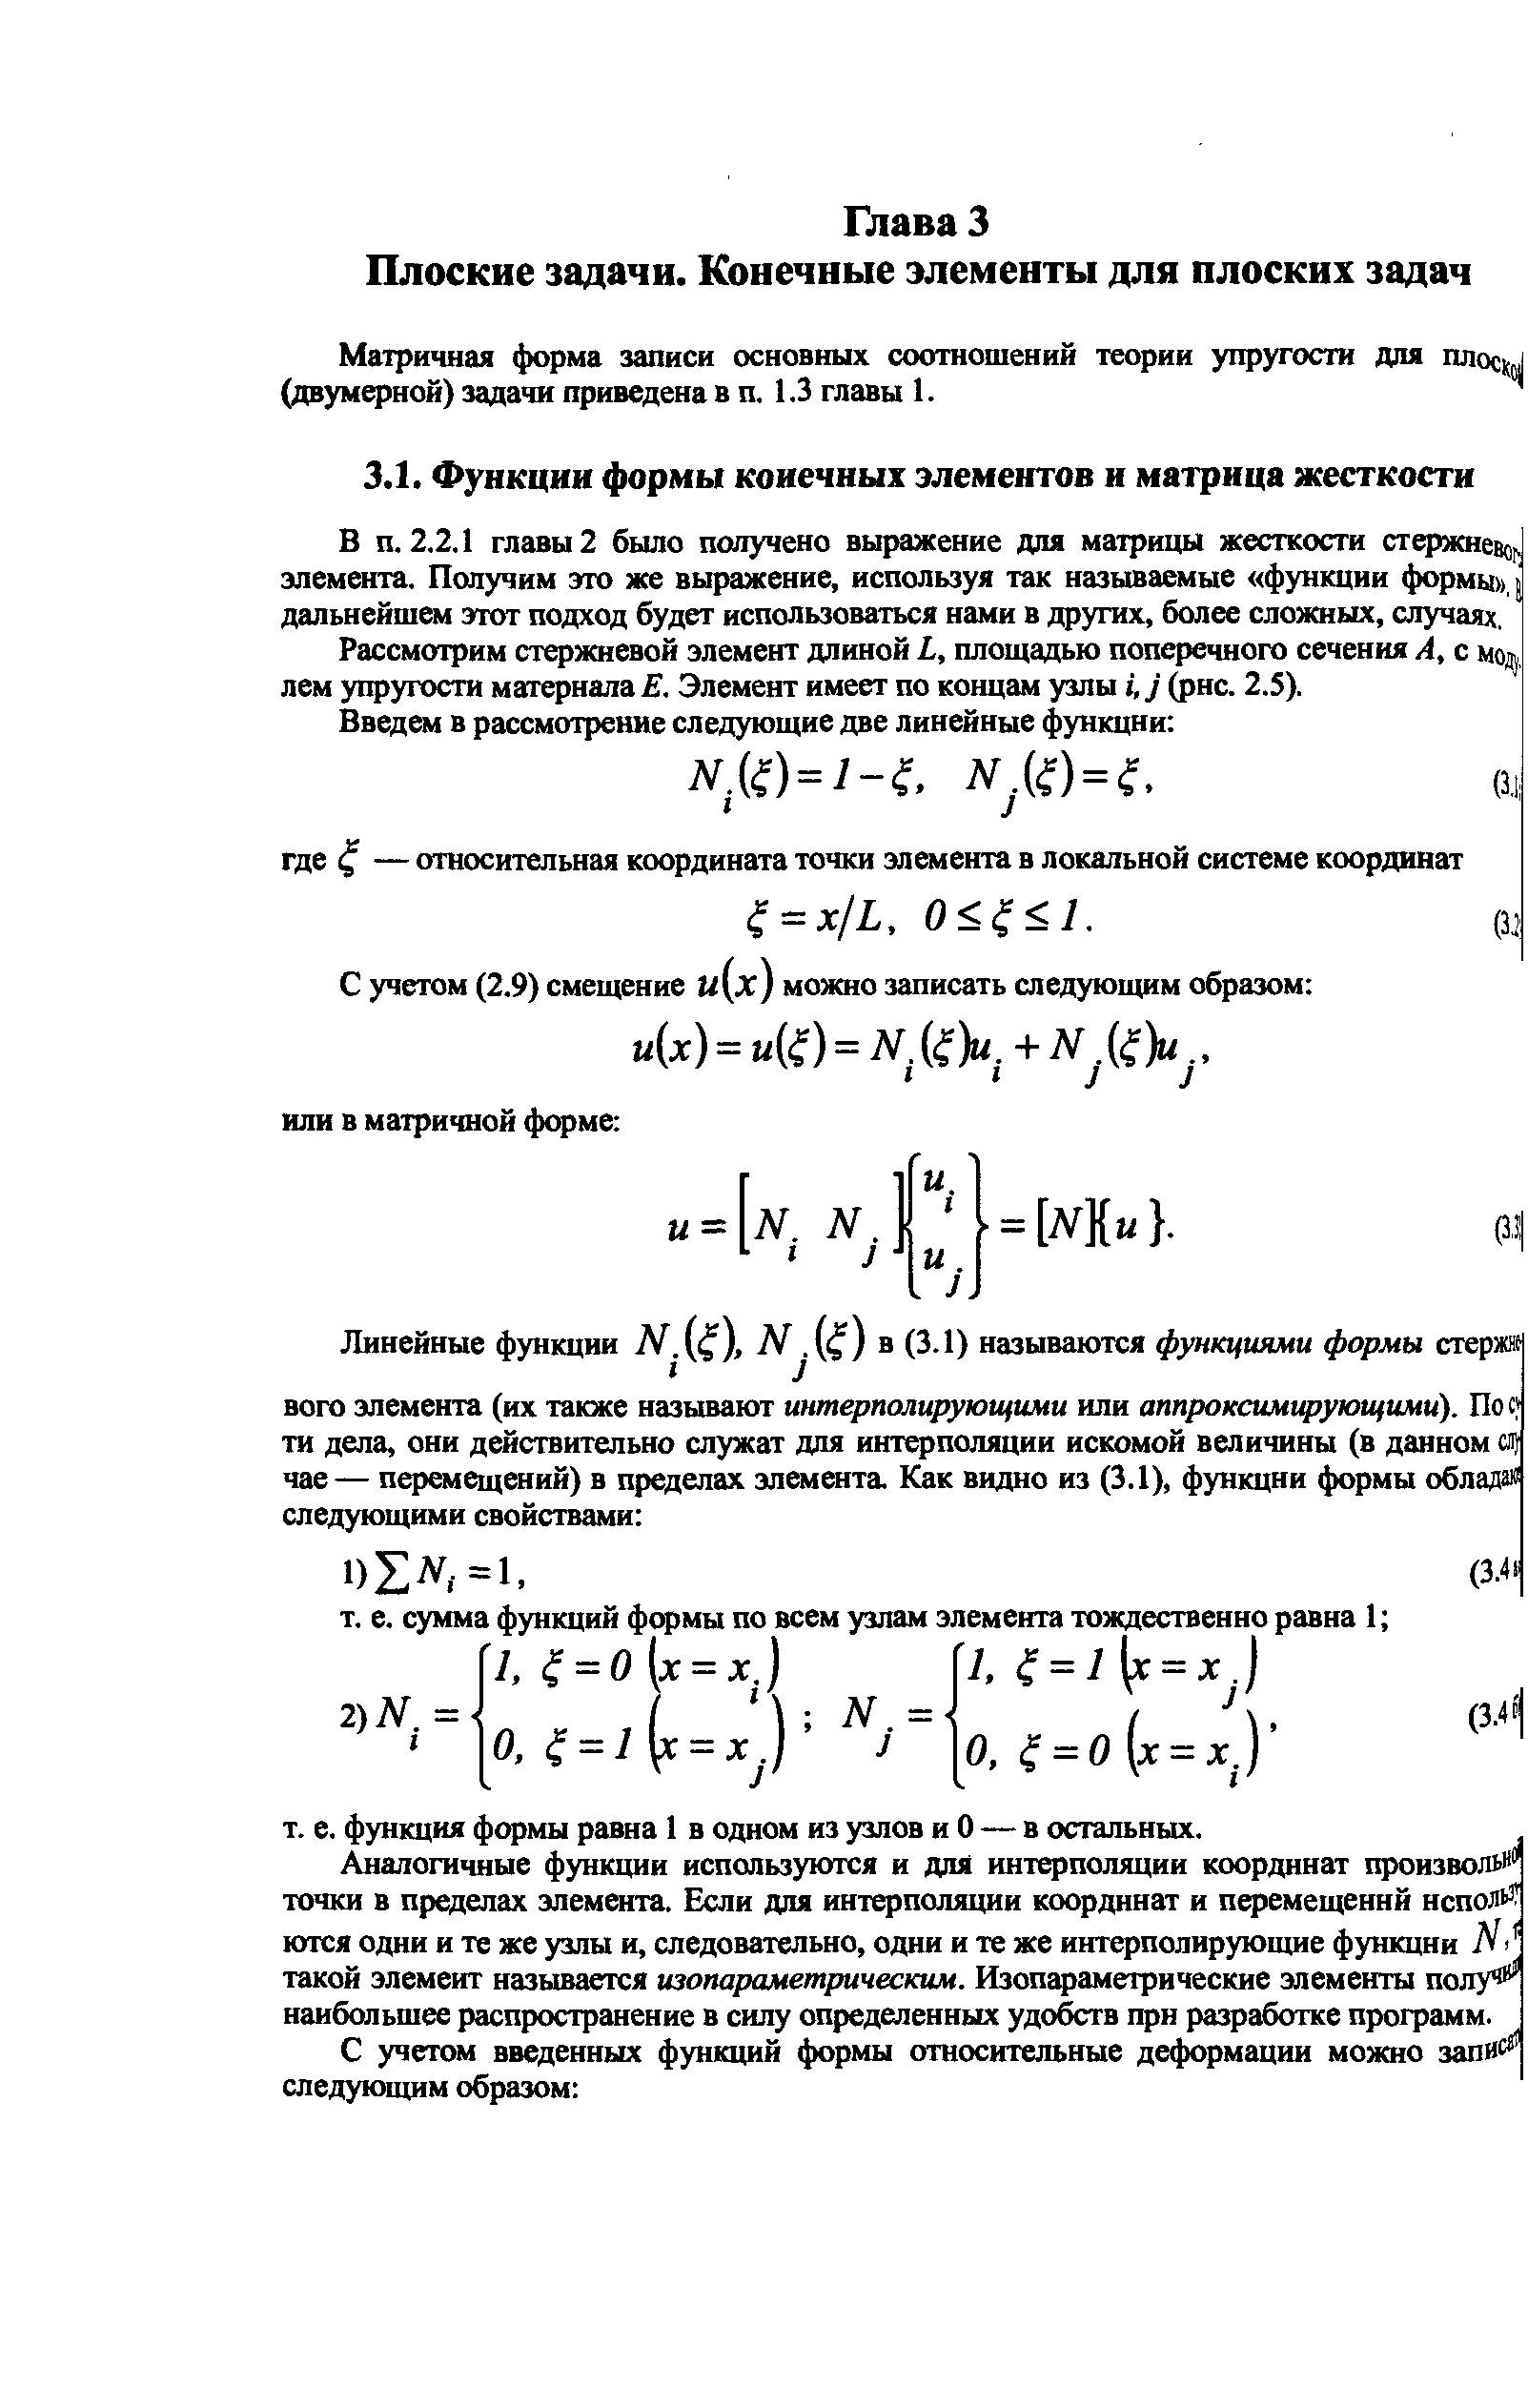 Матричная форма записи основных соотношений теории упругости для плоси (двумерной) задачи приведена в п. 1.3 главы 1.
